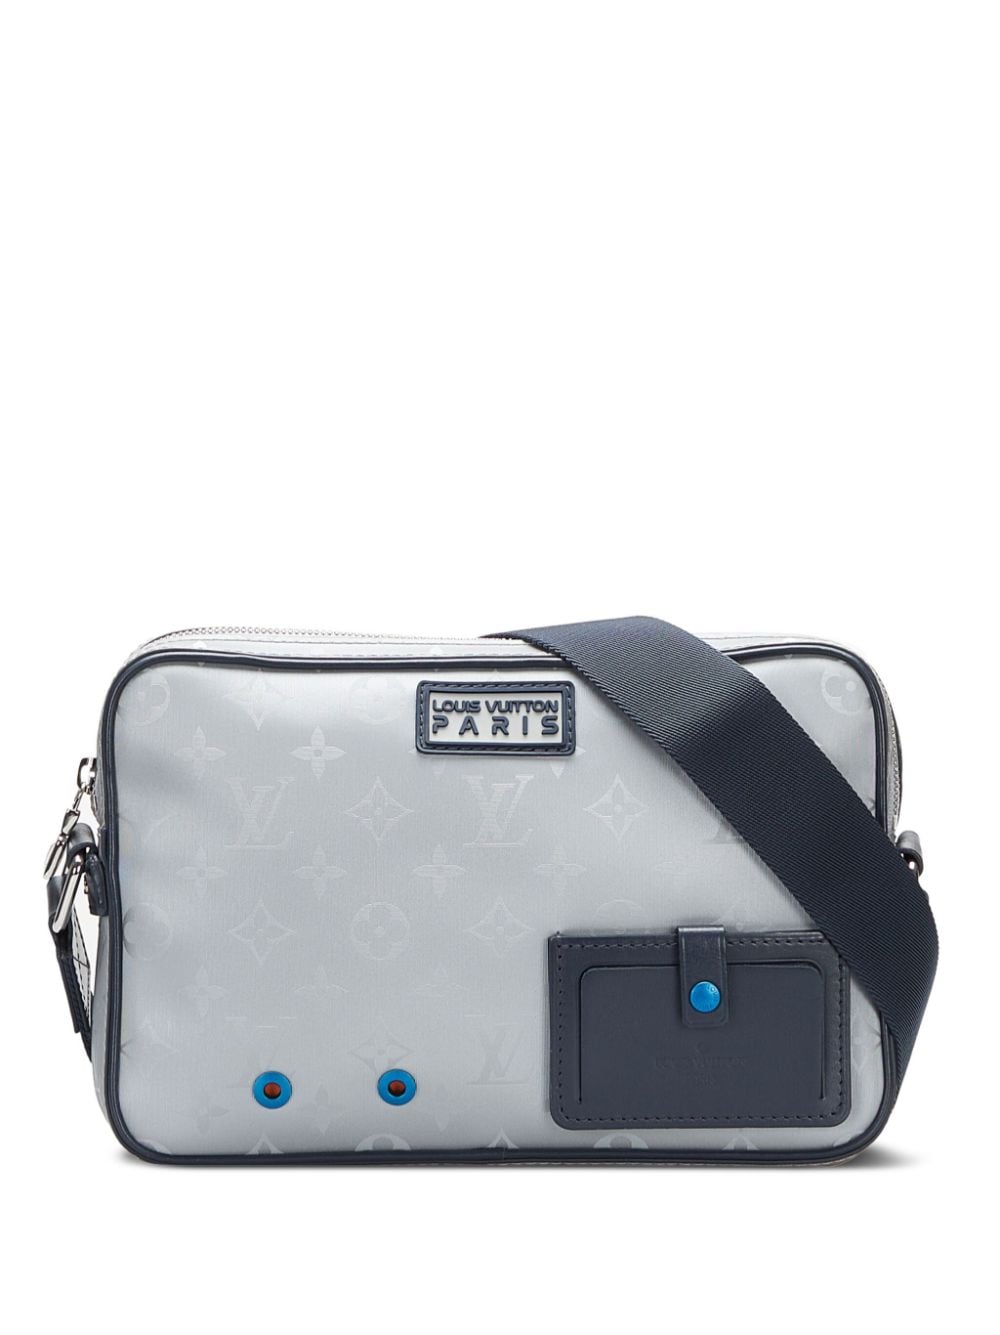 Louis Vuitton Monogram Senilis Crossbody Bag – Closet Connection Resale